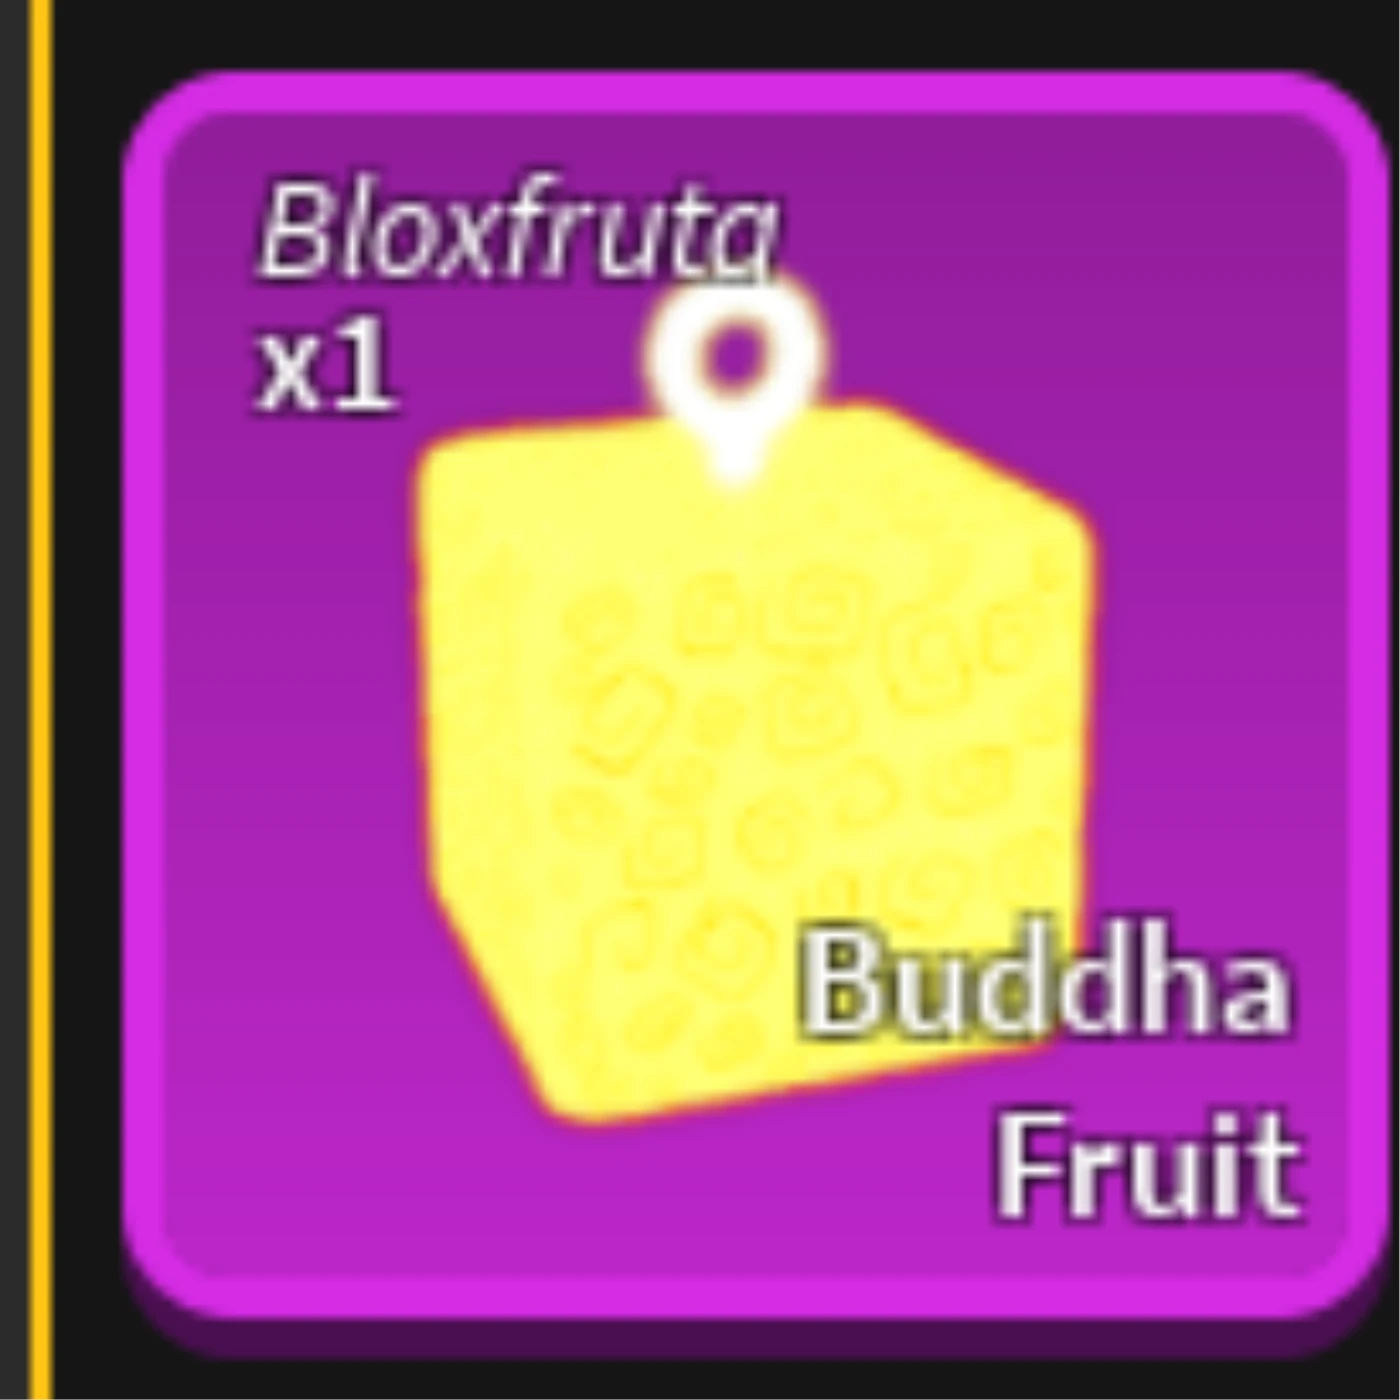 foto da fruta buddha do blox fruit